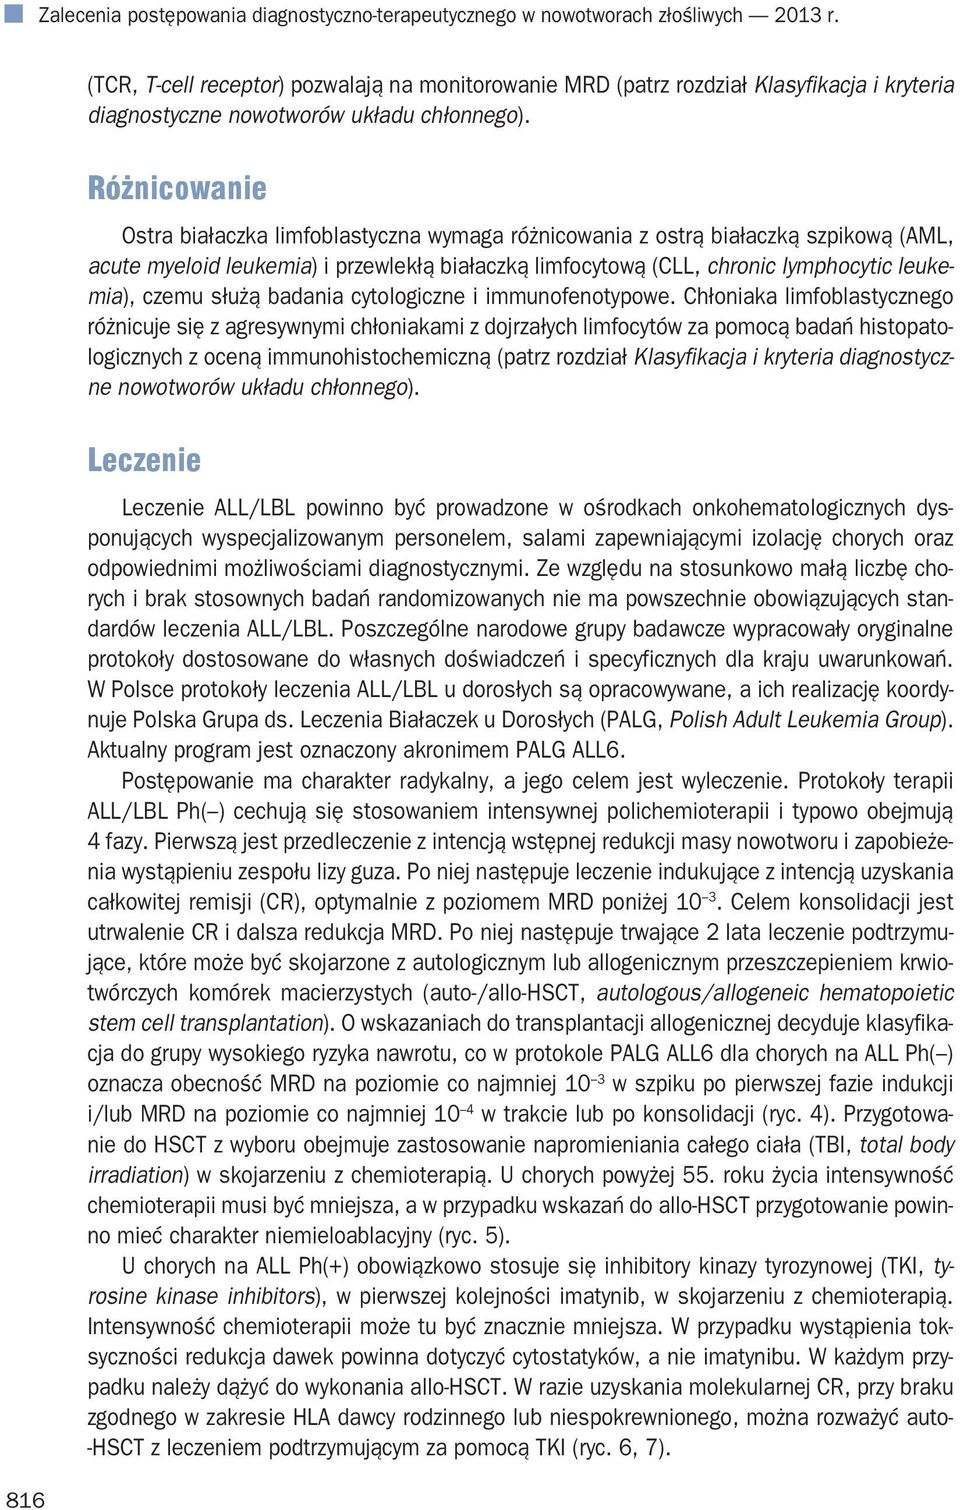 Różnicowanie Ostra białaczka limfoblastyczna wymaga różnicowania z ostrą białaczką szpikową (AML, acute myeloid leukemia) i przewlekłą białaczką limfocytową (CLL, chronic lymphocytic leukemia), czemu